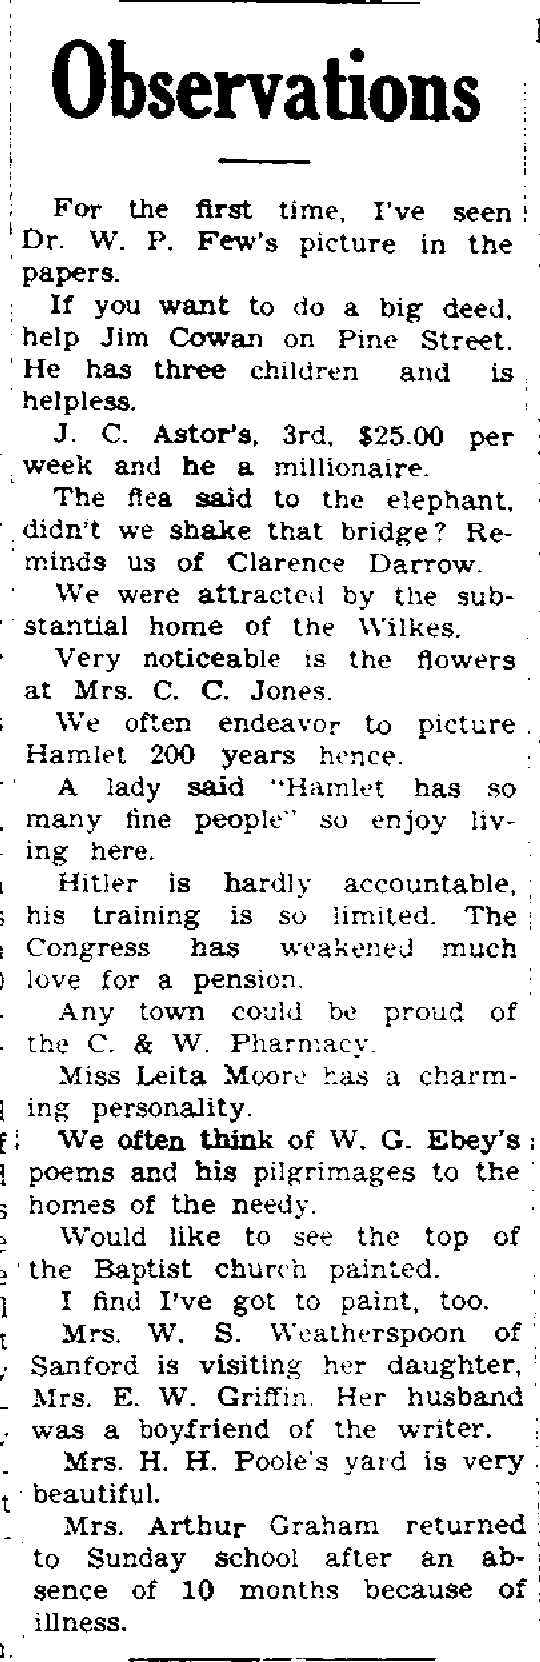 3-25-1935 Hamlet News observations.jpg